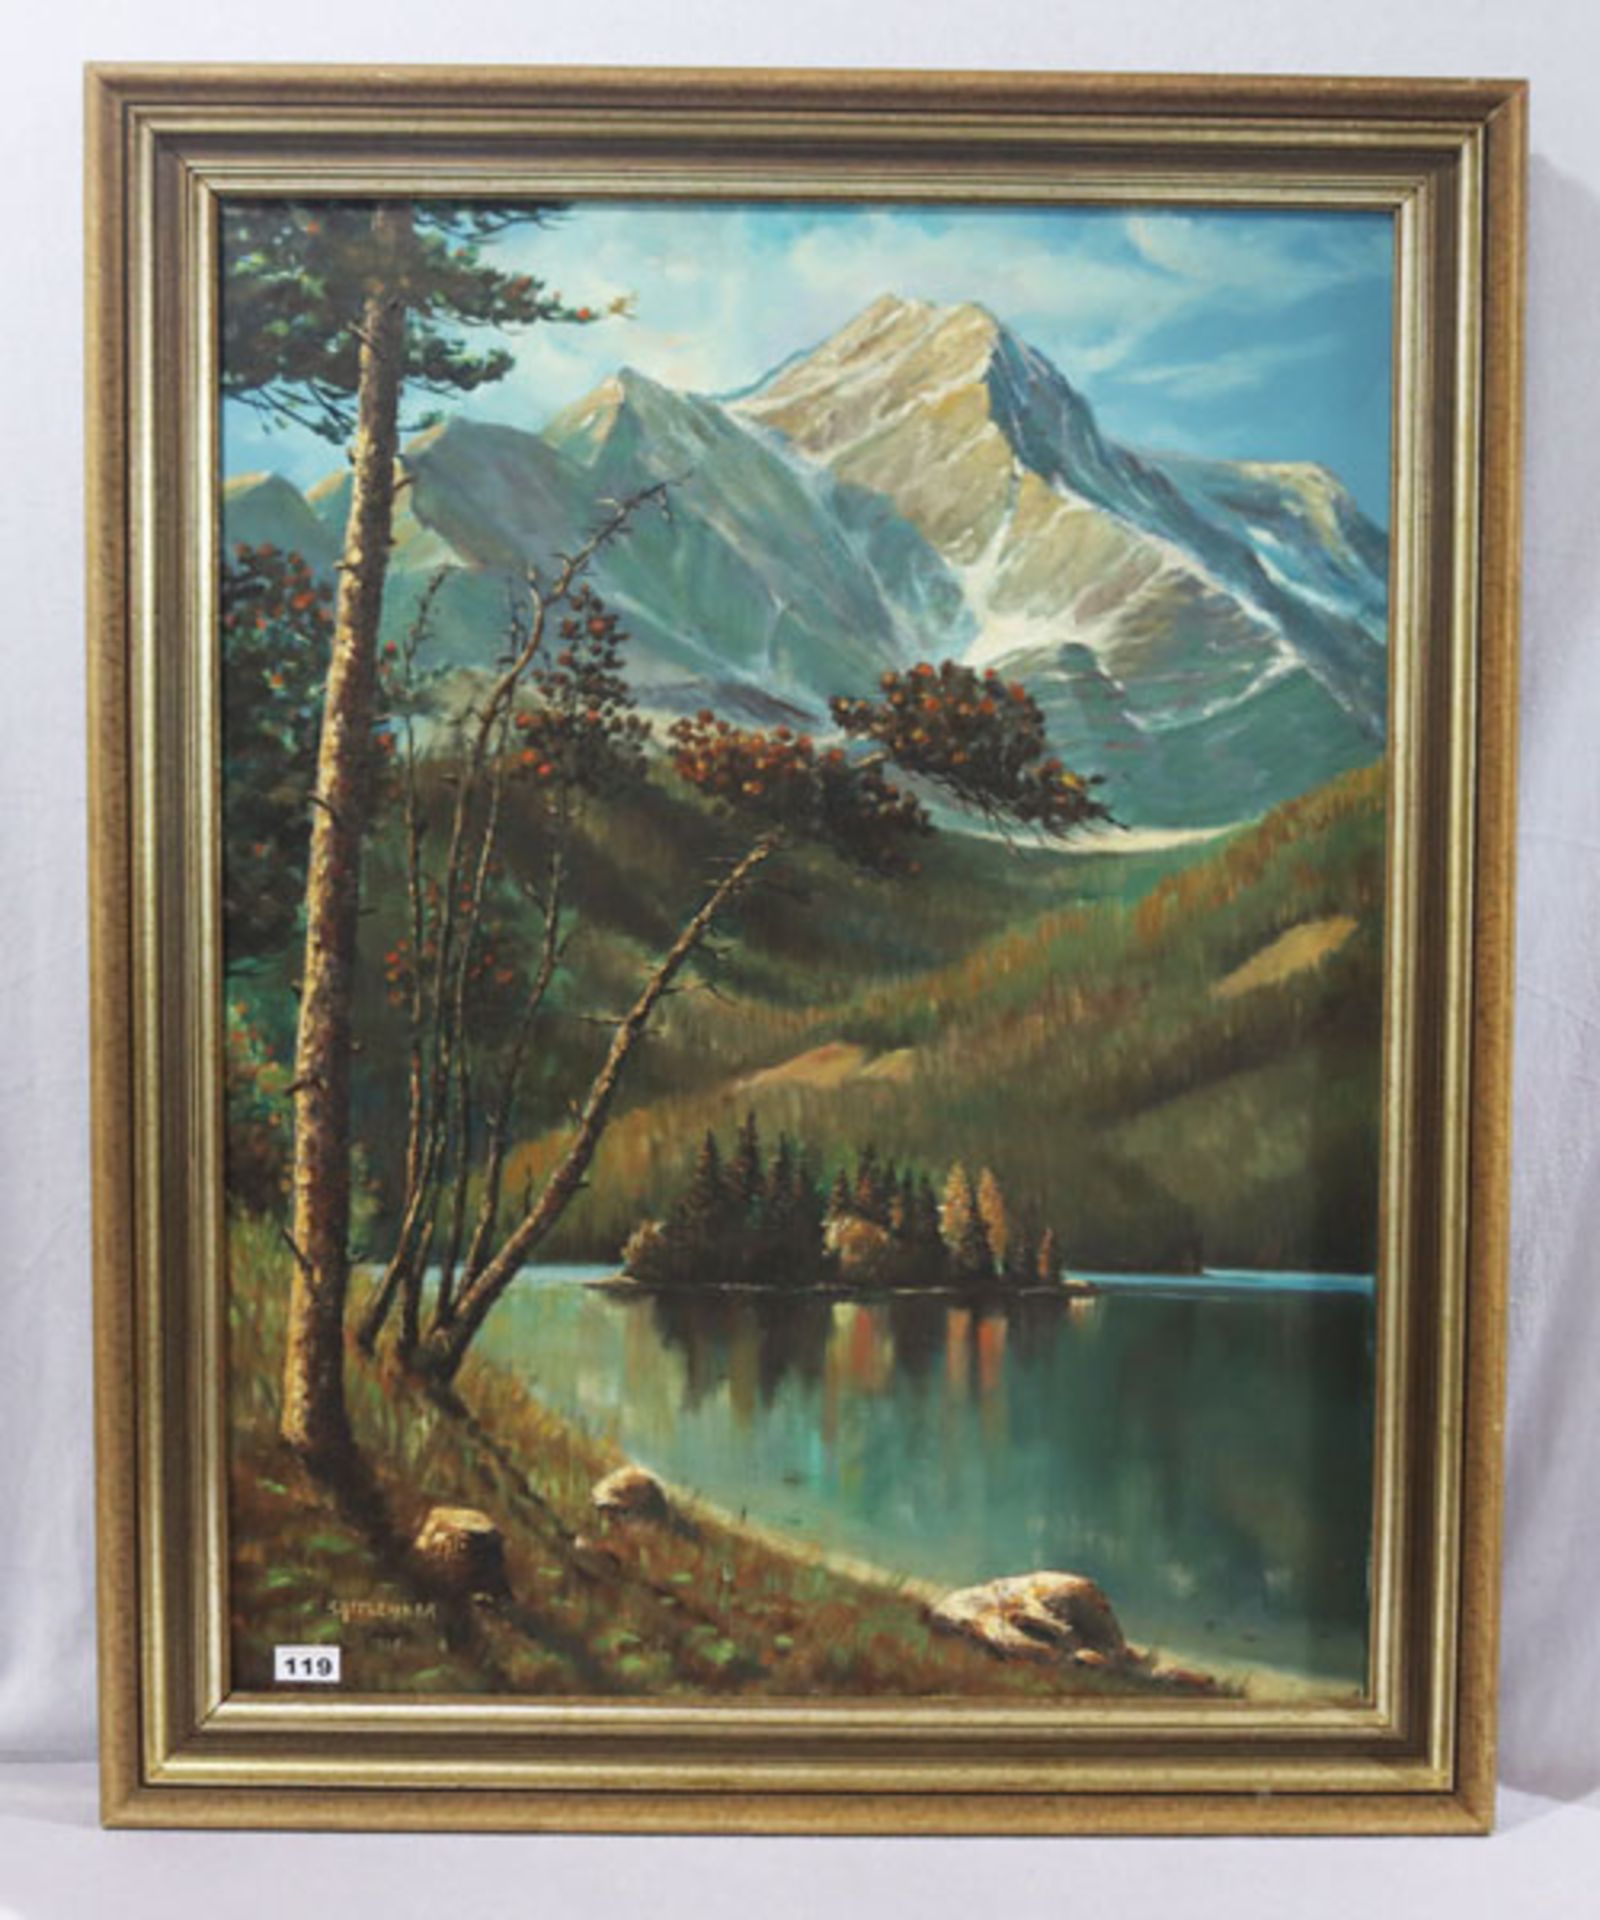 Gemälde ÖL/LW 'Eibsee mit Zugspitze', signiert Battlehner 1977, Wilhelm von Battlehner, * 1906 +